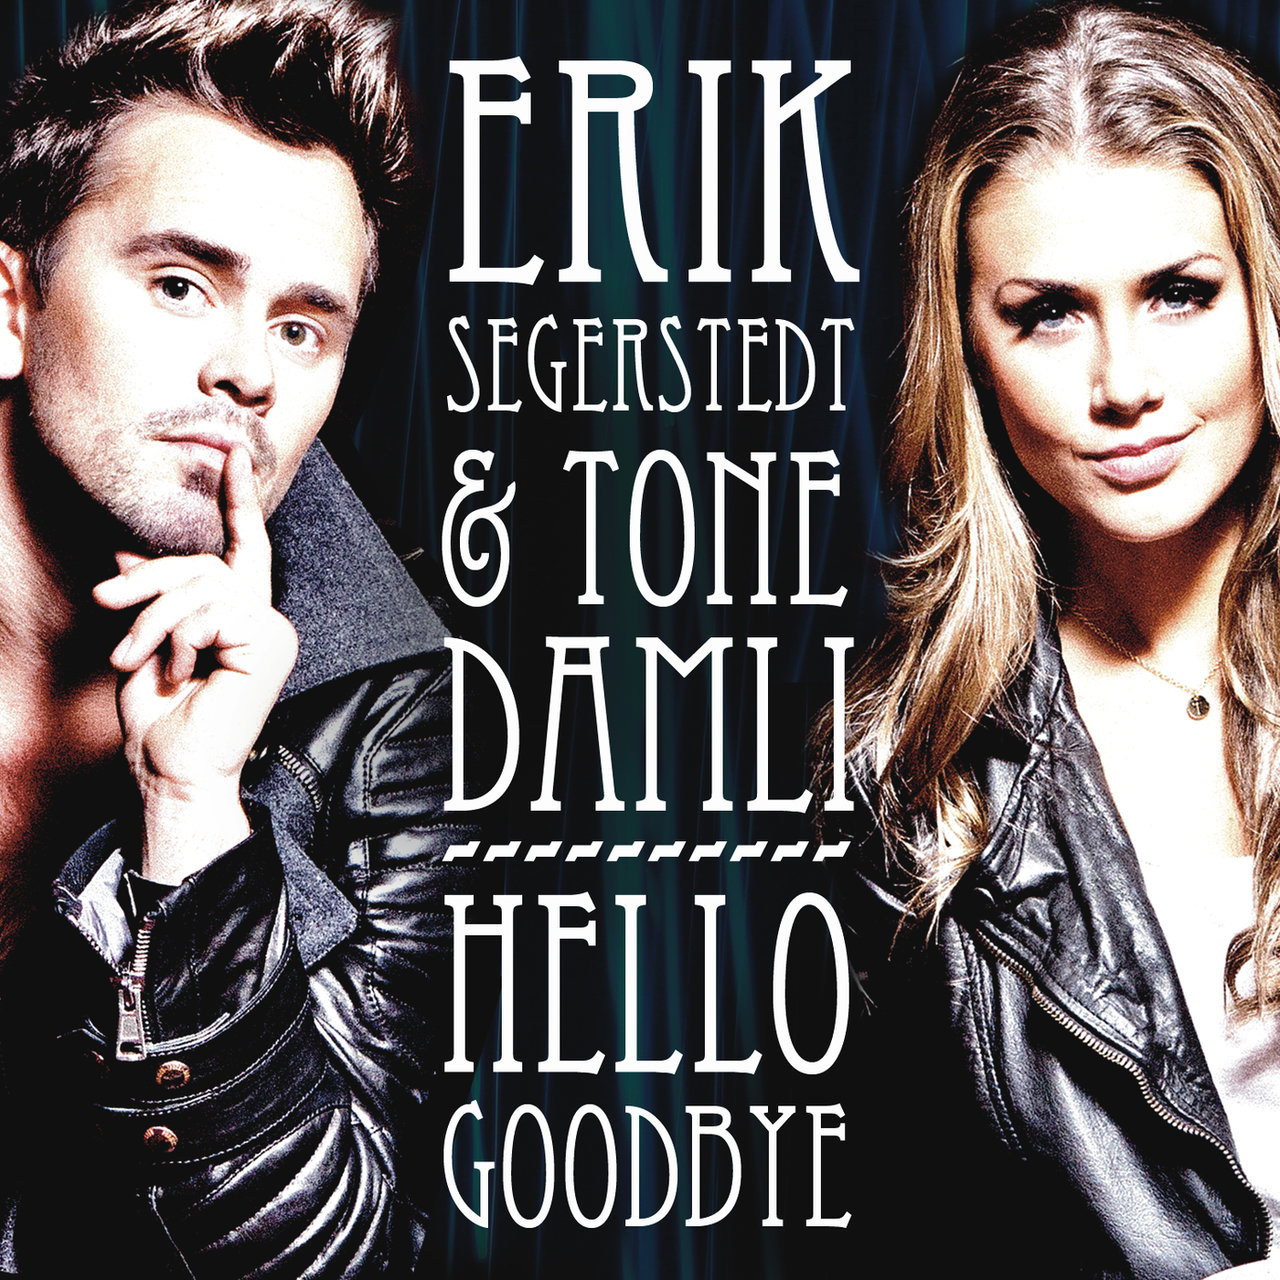 Erik Segerstedt & Tone Damli Hello Goodbye cover artwork